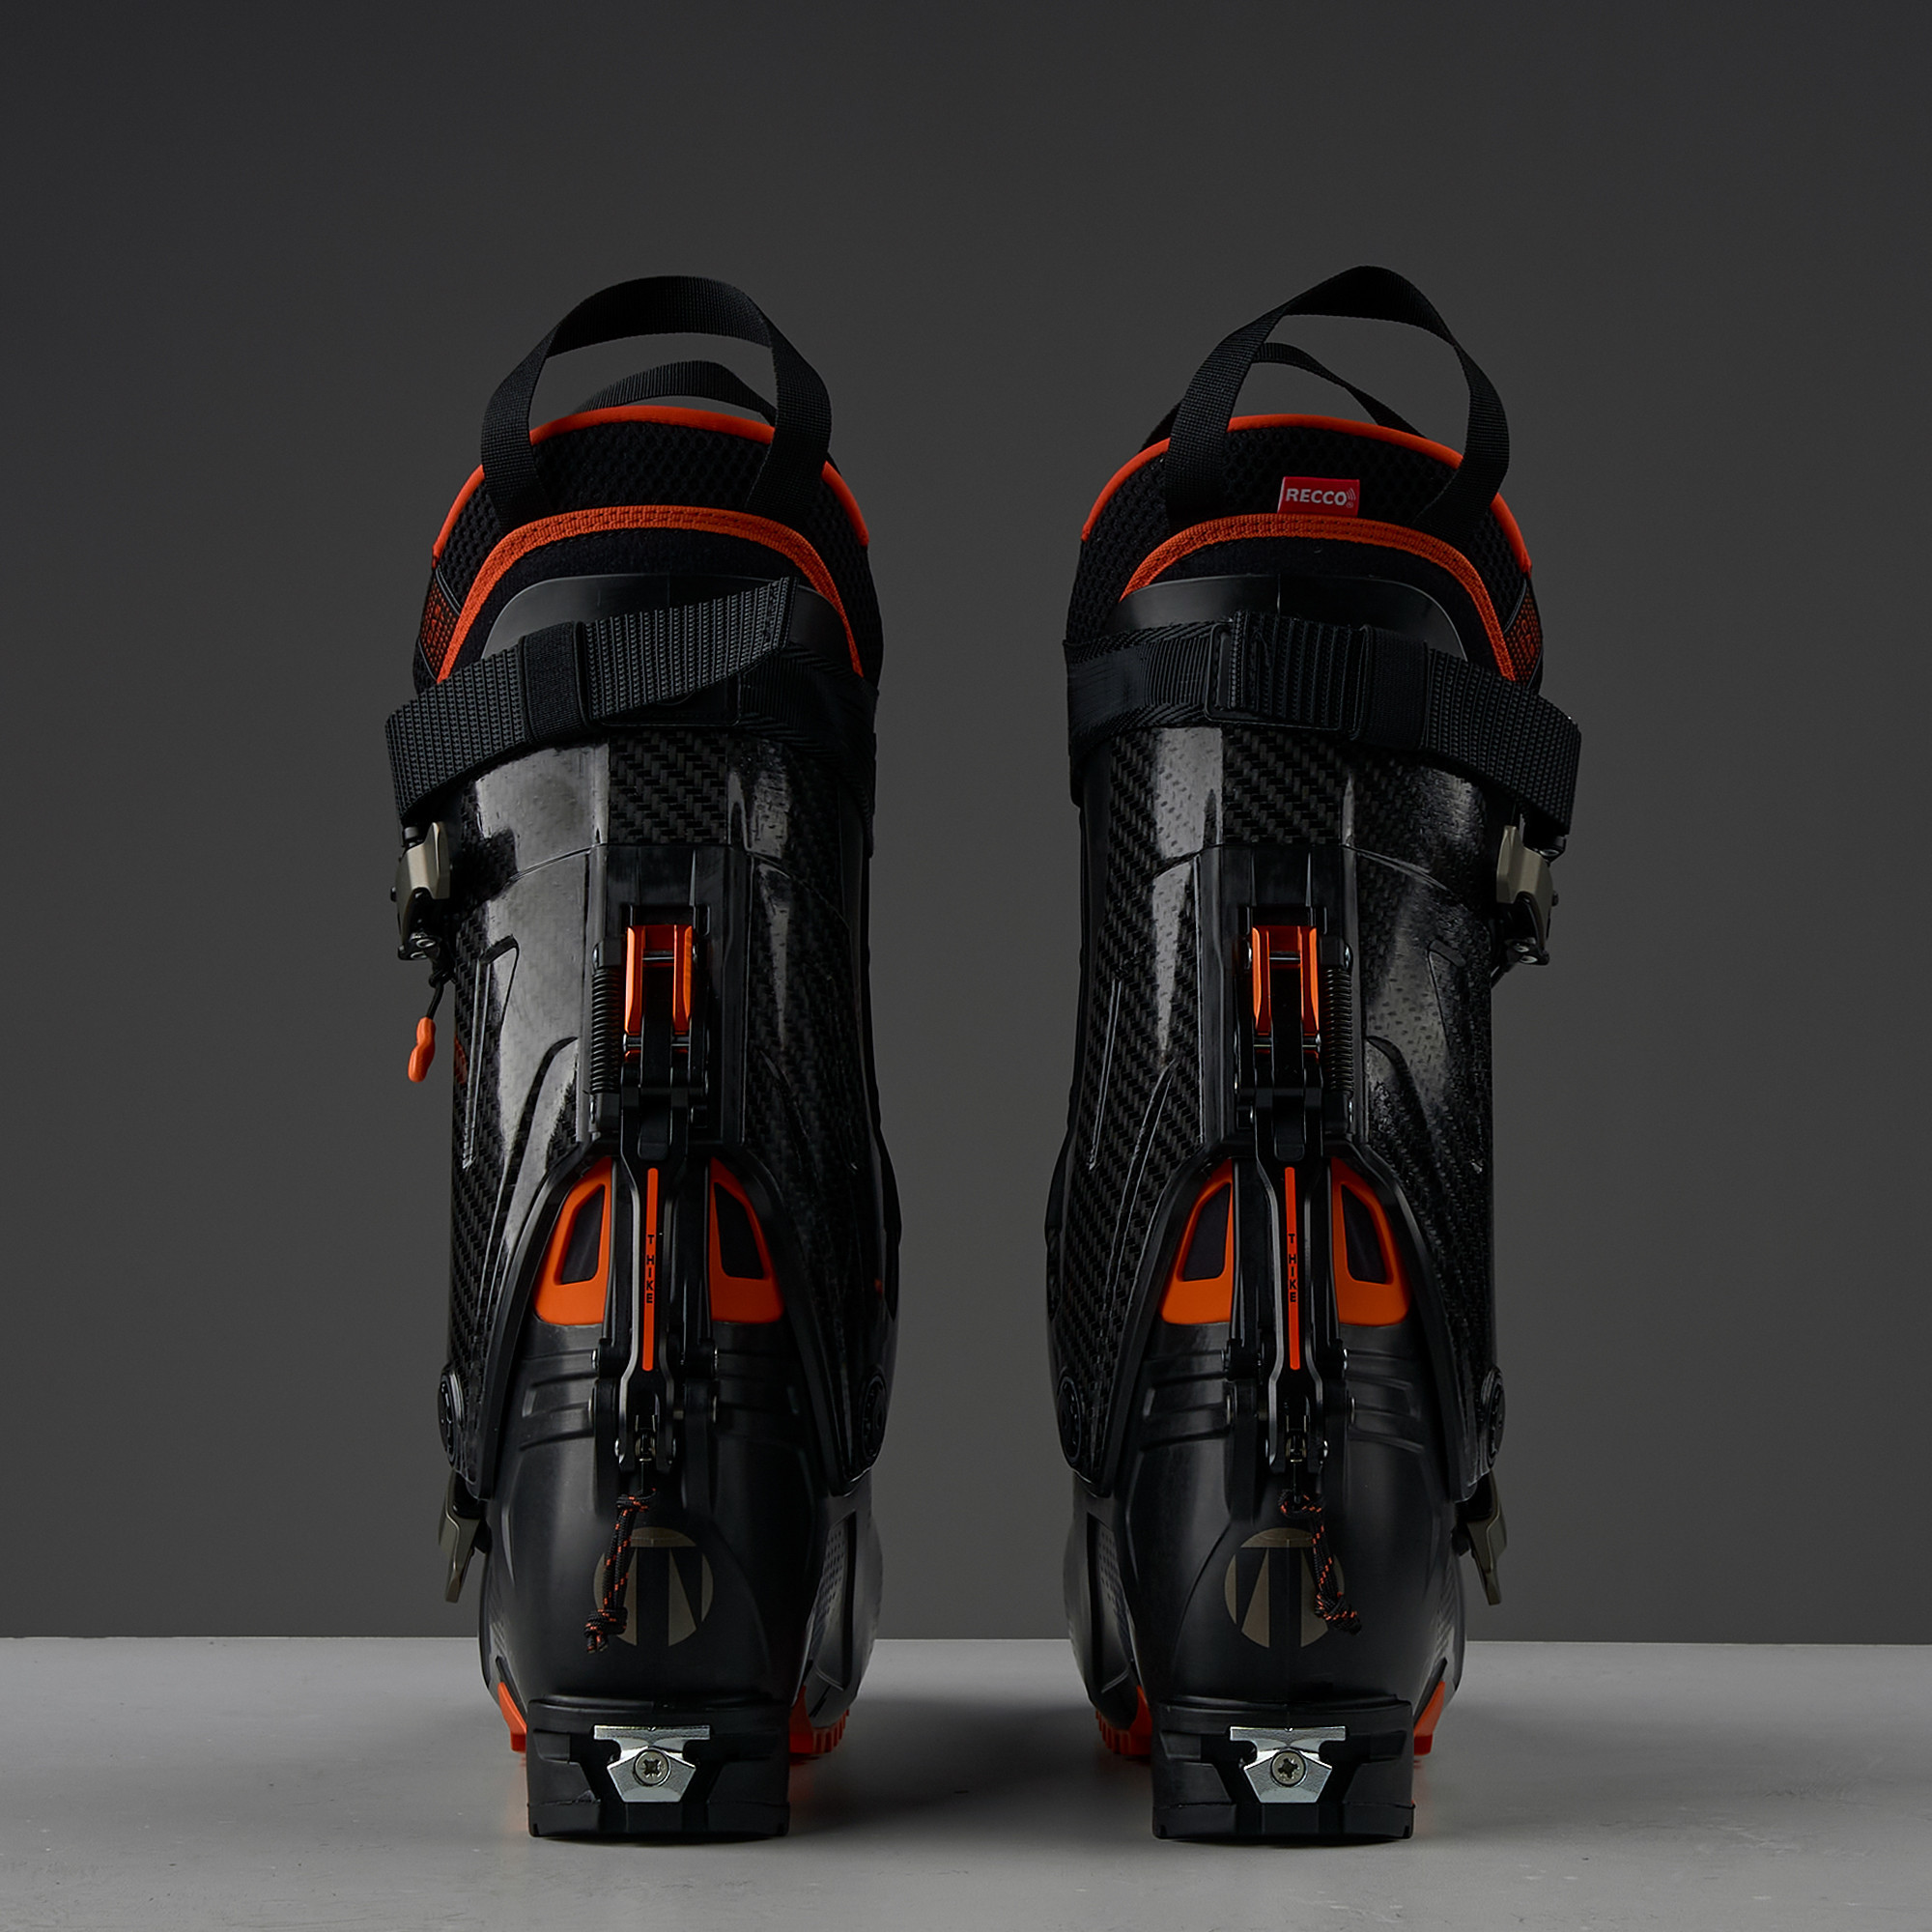 Tecnica Peak W's 23.5 Ski Boots – Ski The Whites